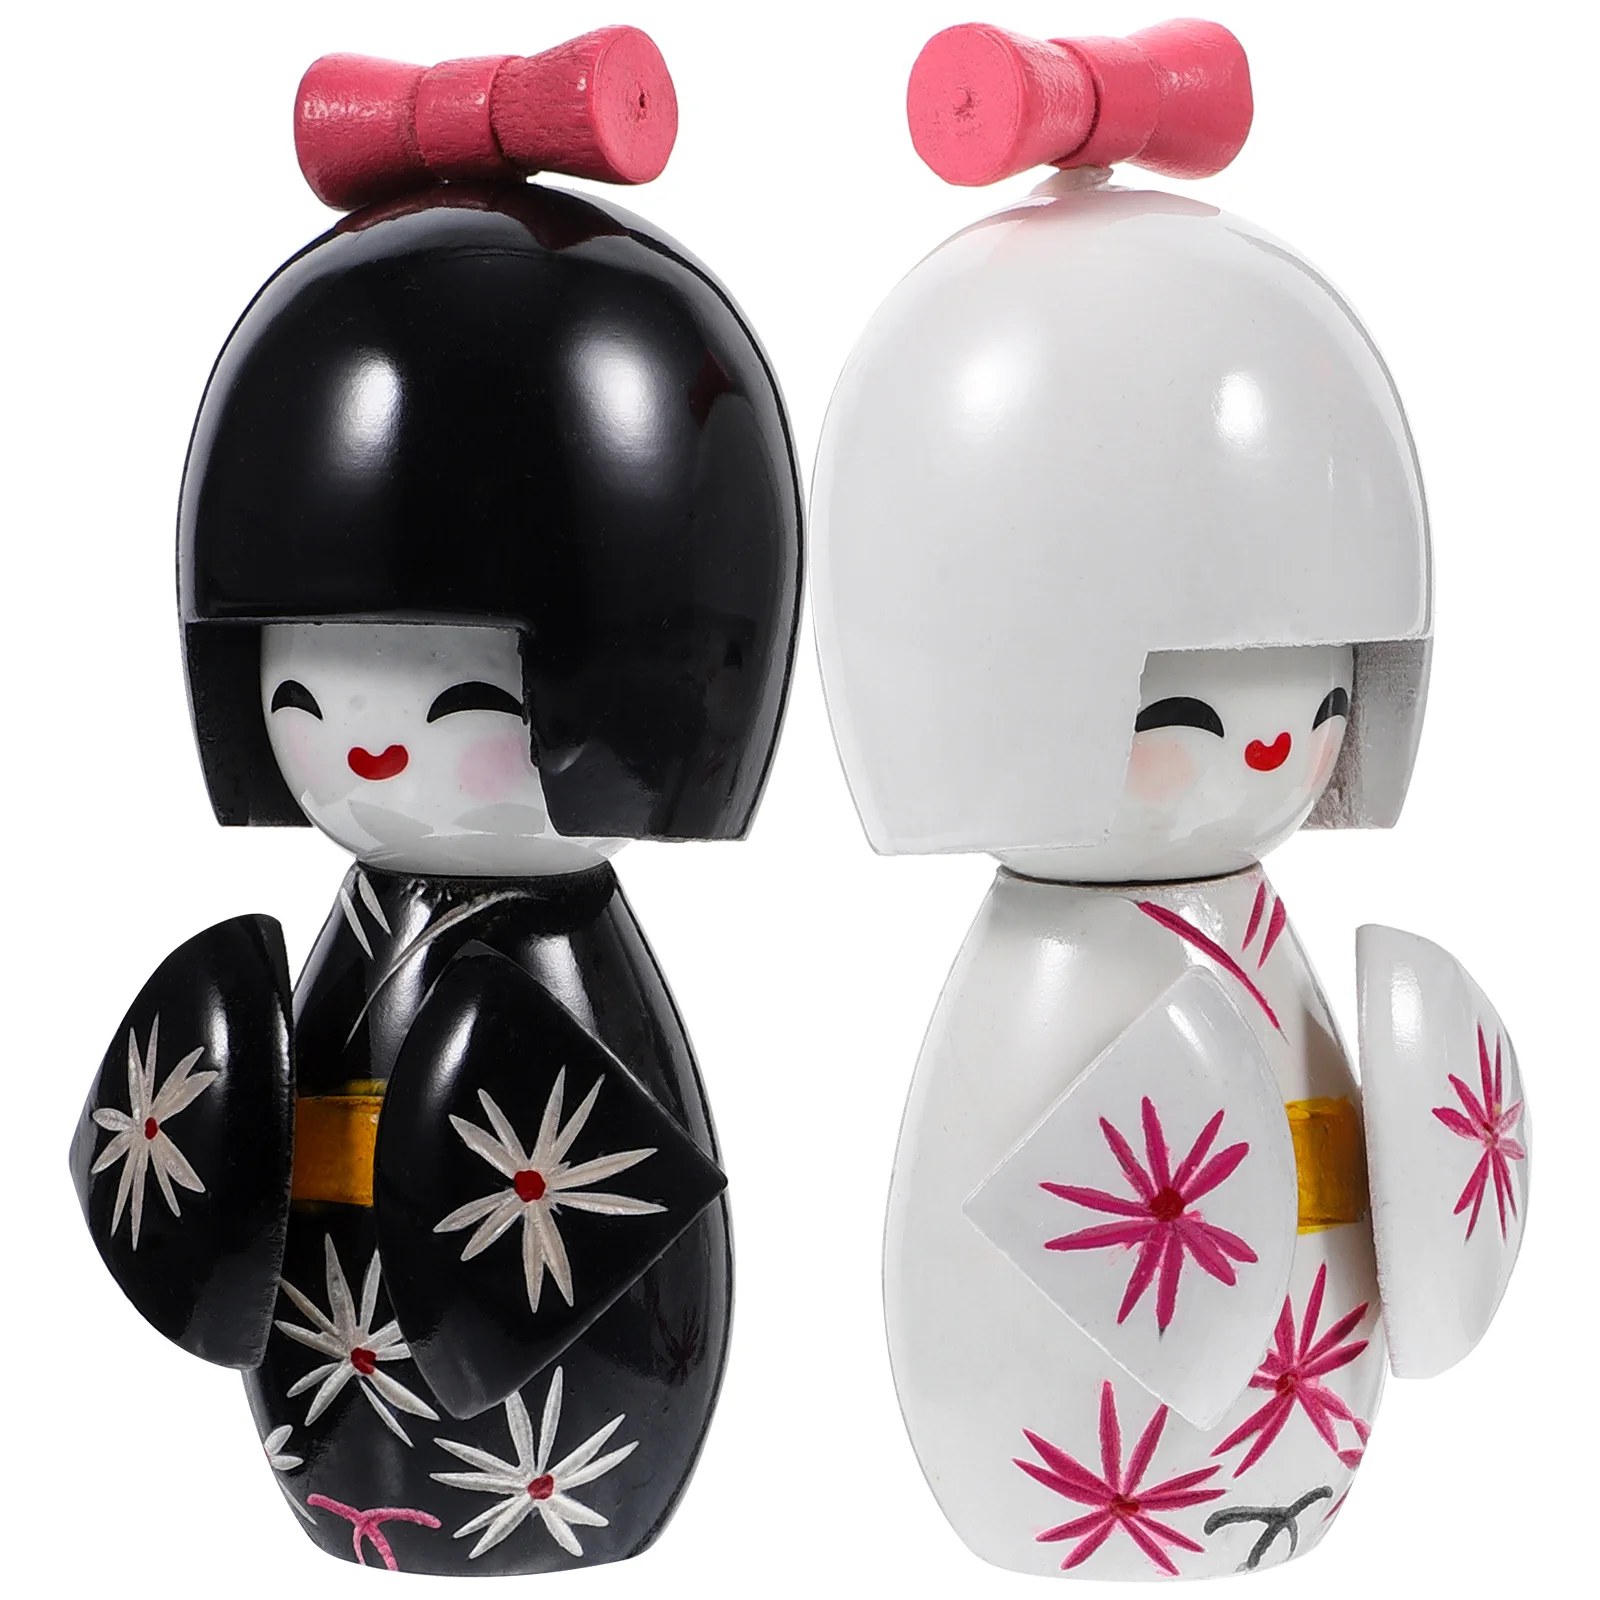 

2 Pcs Crafts Home Japanese-style Desktop Kimono Decor Sculptures Figurines Decors